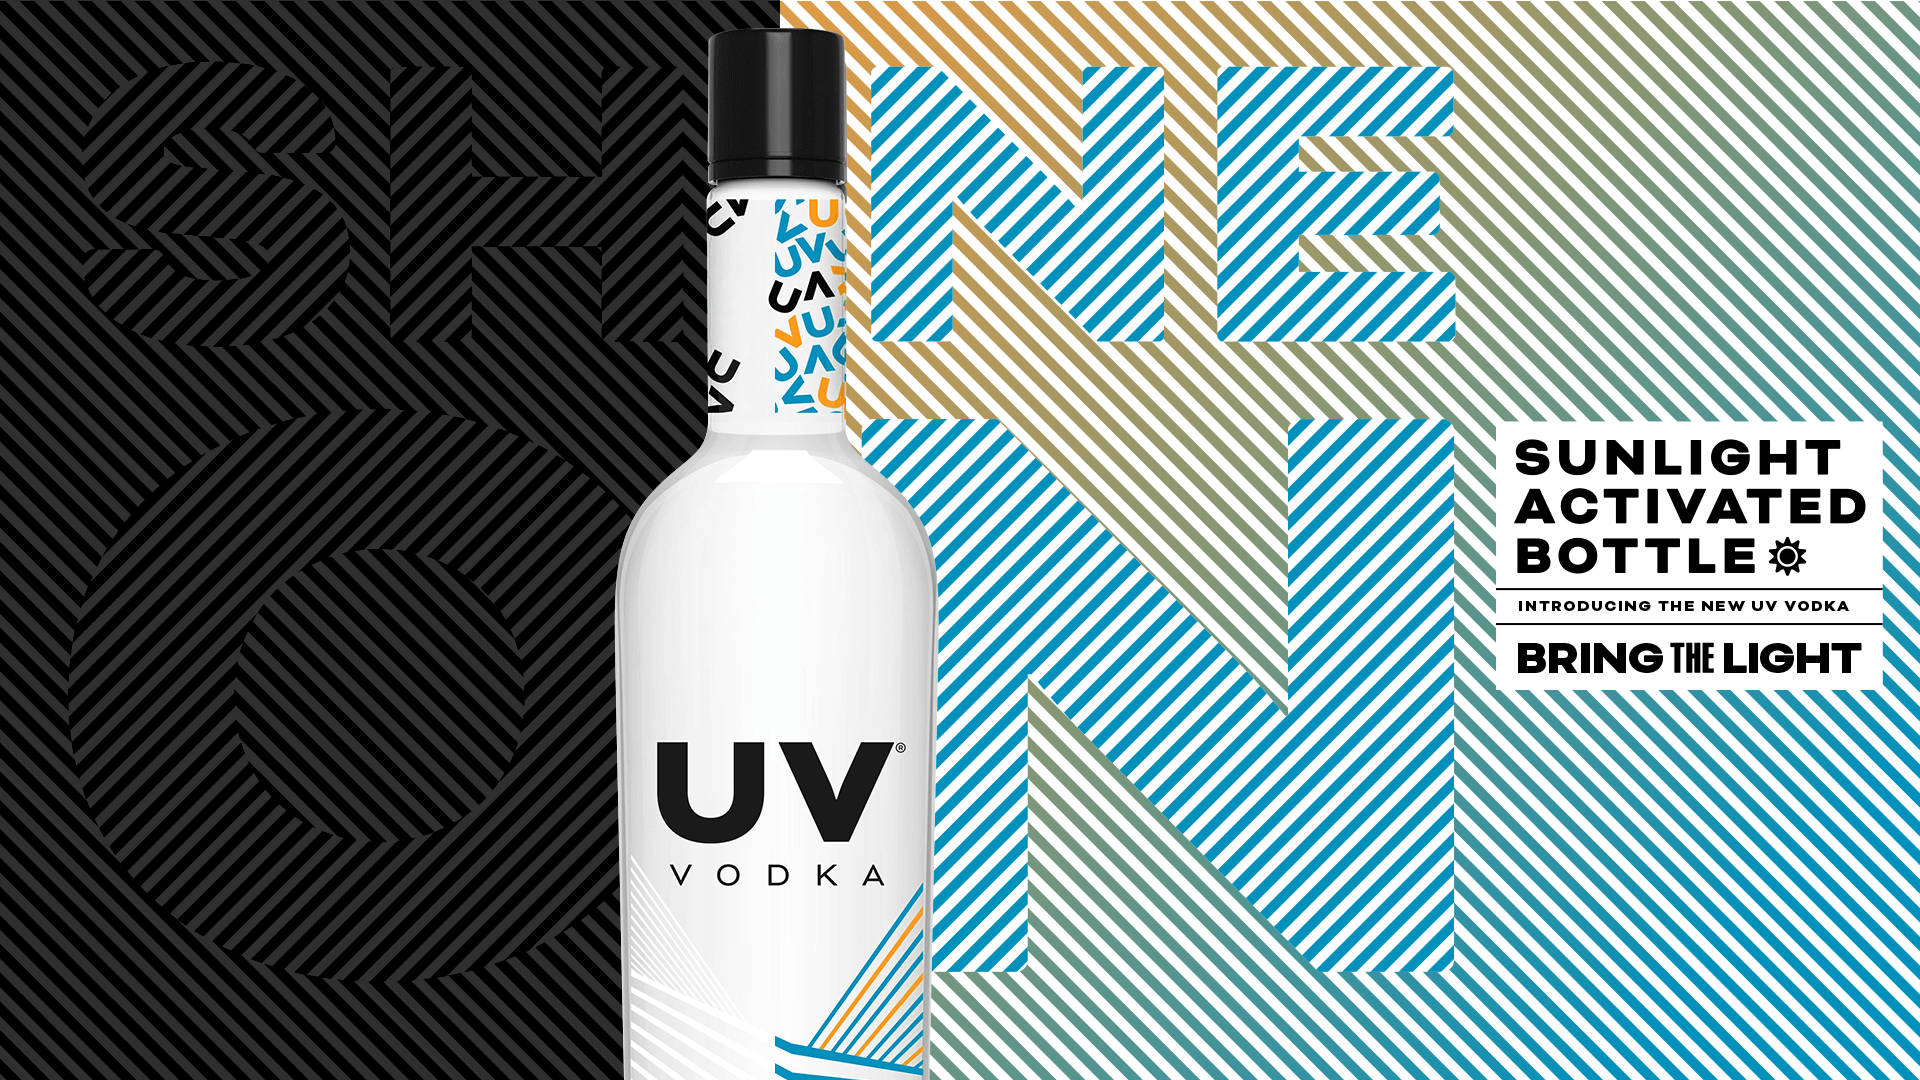 Uv Vodka Sunlight Activated Bottle Wallpaper